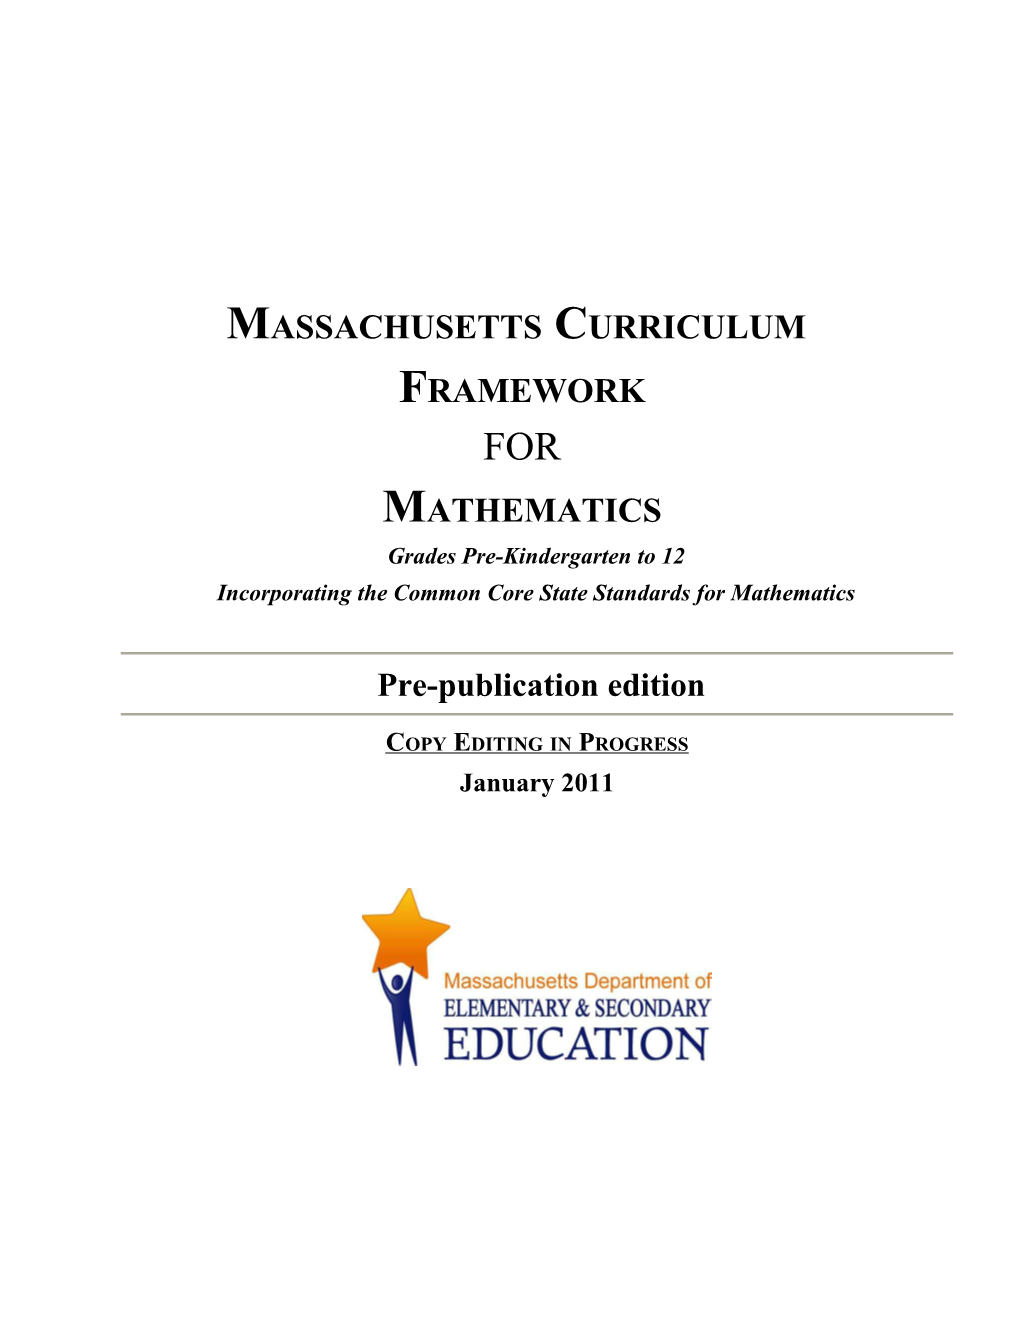 2011 Massachusetts Curriculum Framework for Mathematics Prek-12